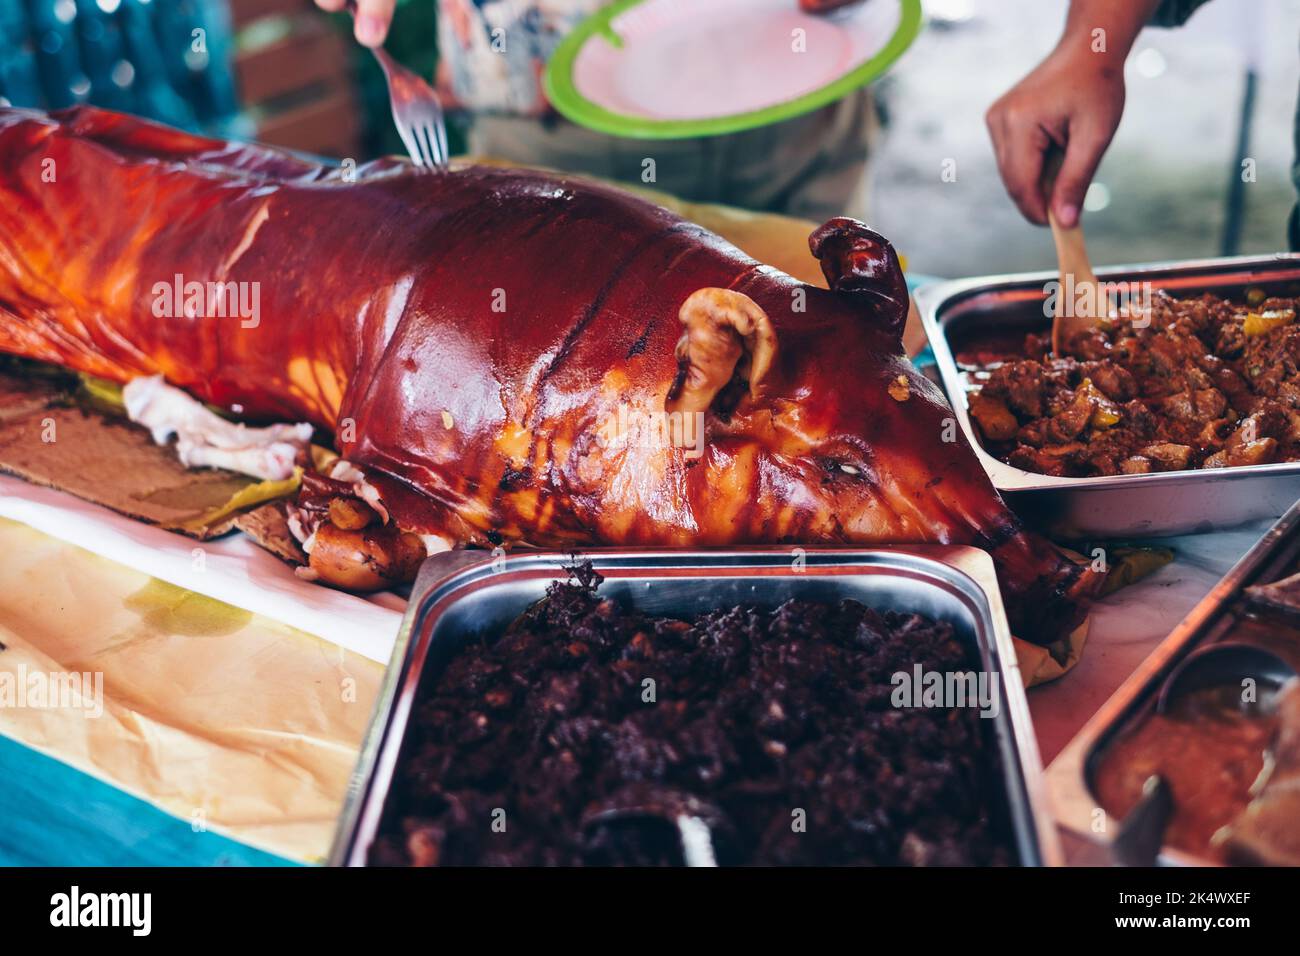 Table de buffet de la nourriture philippine comme le populaire et délicieux porc entier rôti ou 'lechon babouy' (au foyer), ragoût de sang de porc, etc Mise au point sélectionnée. Banque D'Images